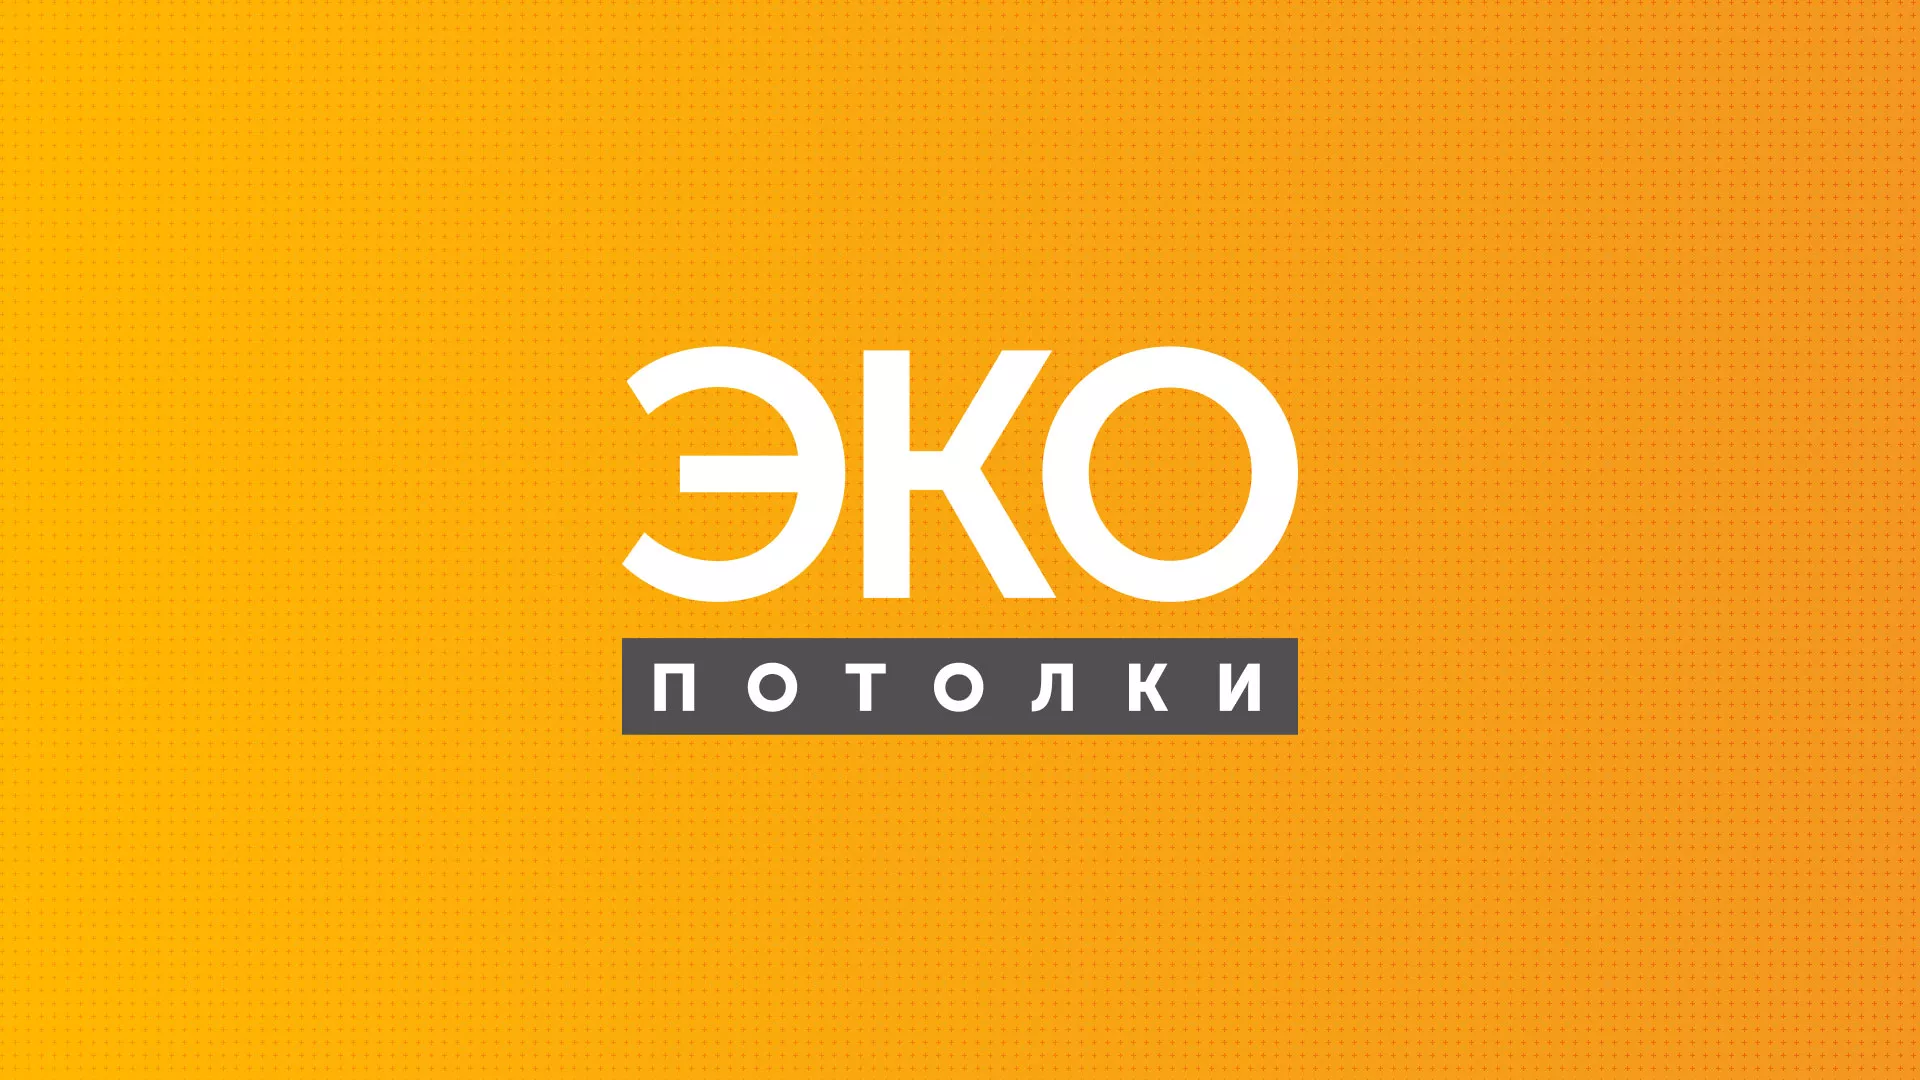 Разработка сайта по натяжным потолкам «Эко Потолки» в Хабаровске